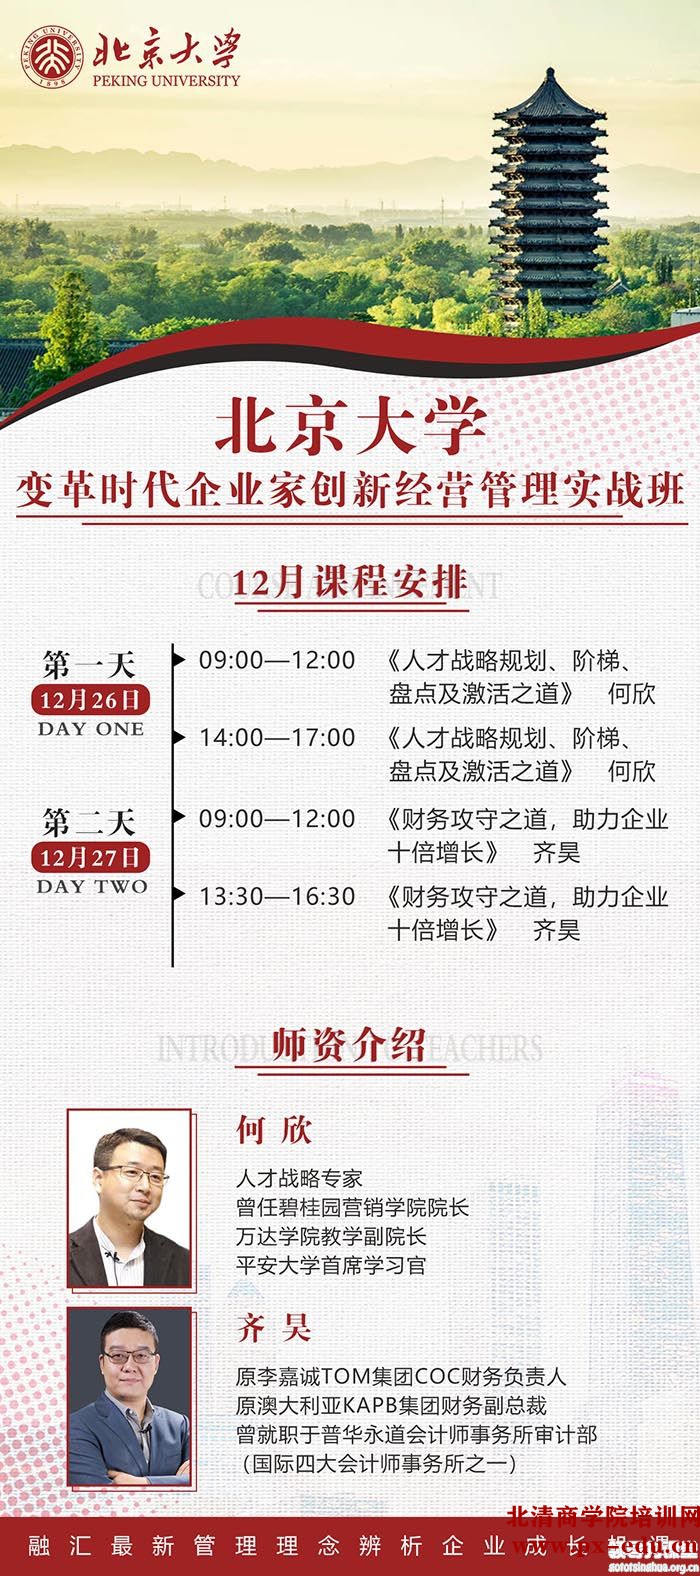 12月26-27日北京大学变革时代企业家创新经营管理实战班开学